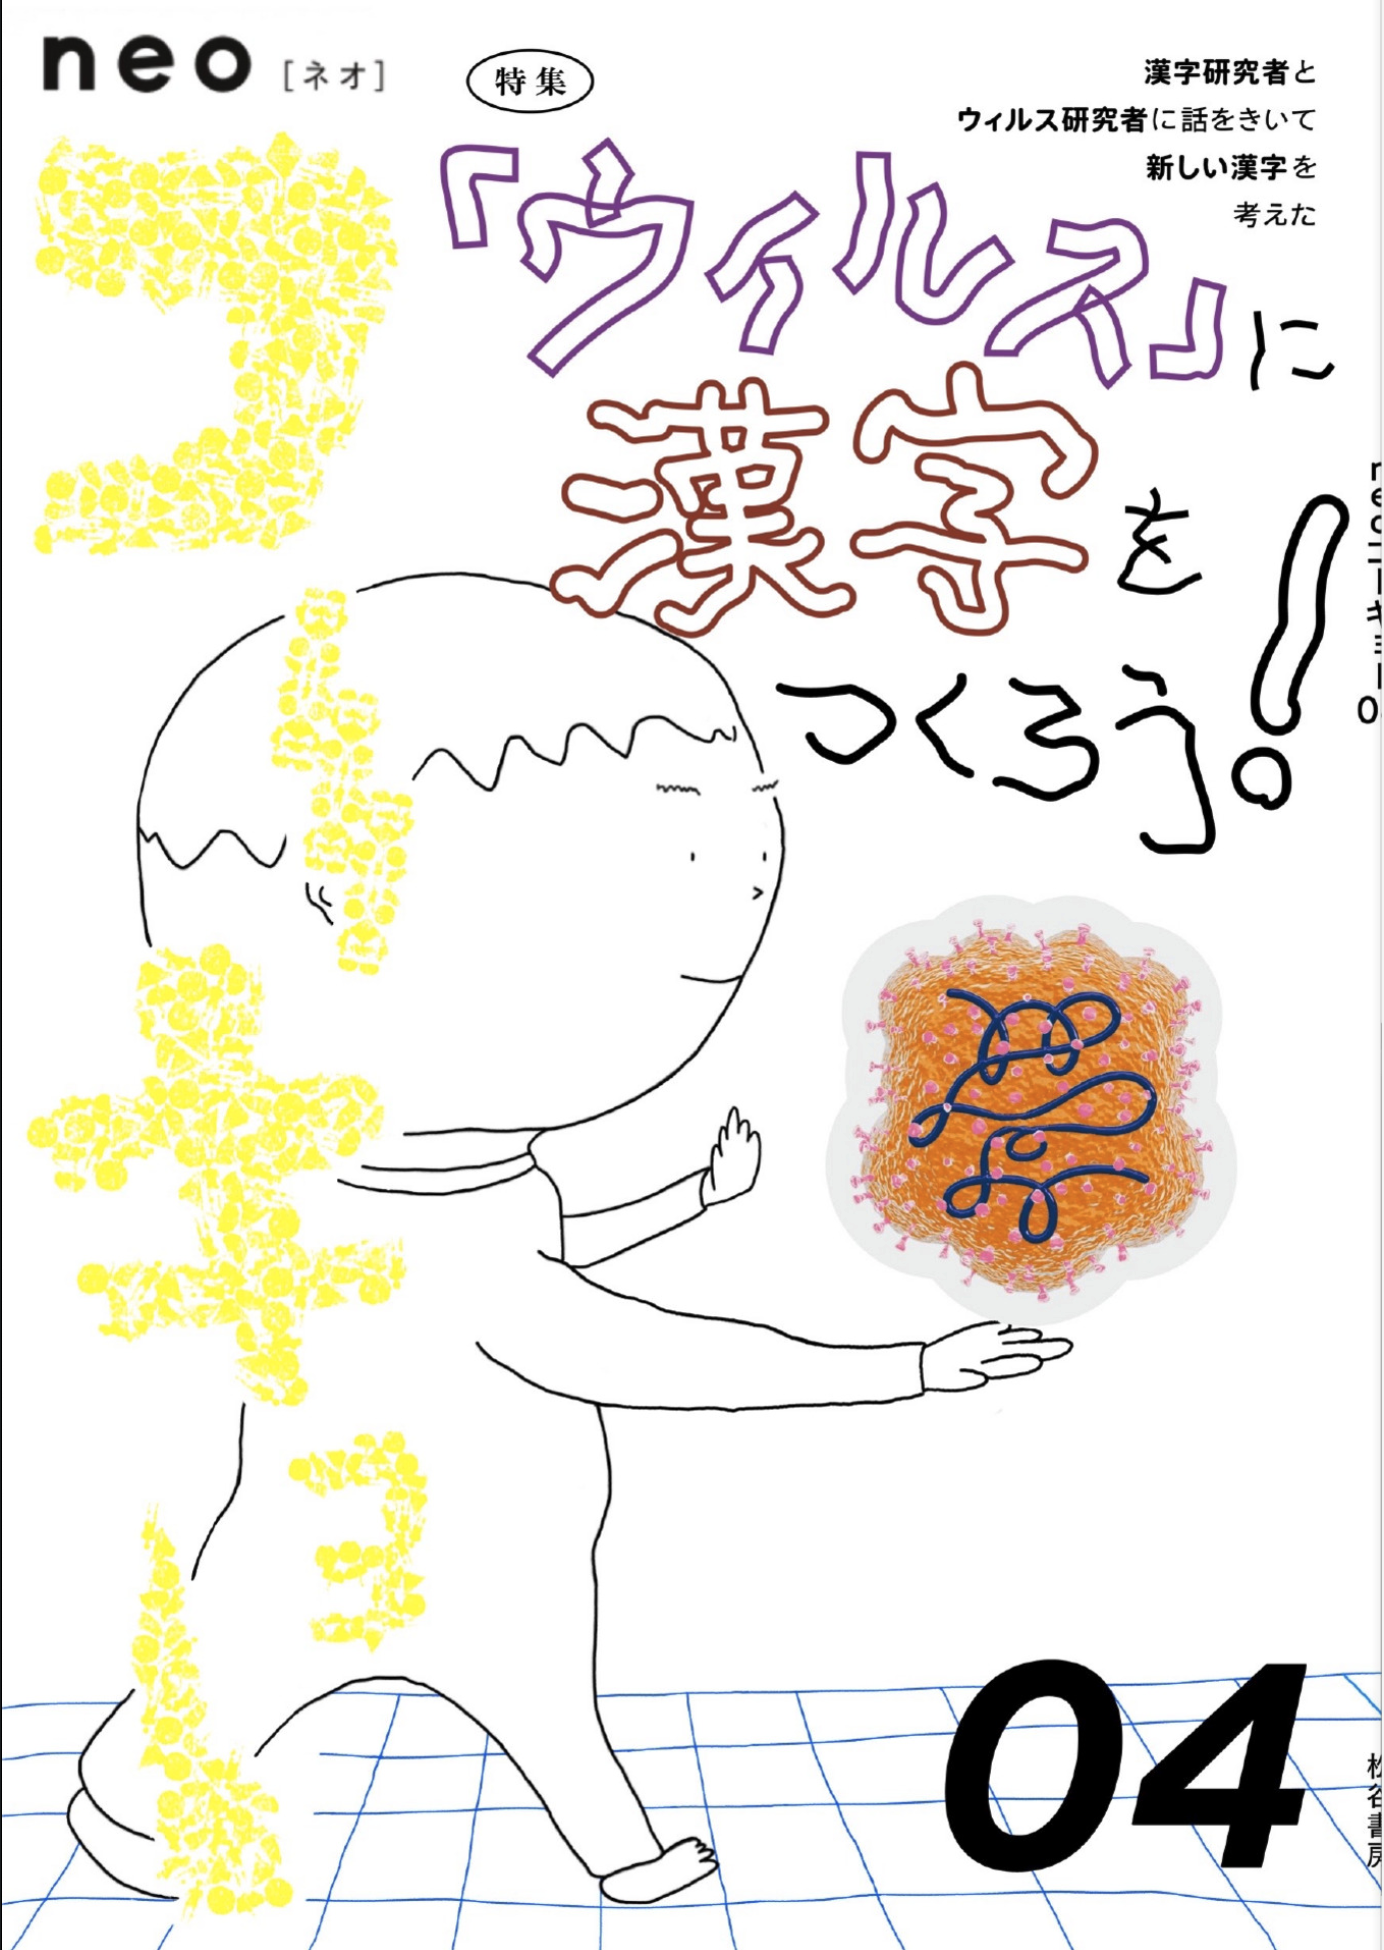 neoコーキョー04の表紙画像。テーマは「ウイルス」に漢字をつくろう。